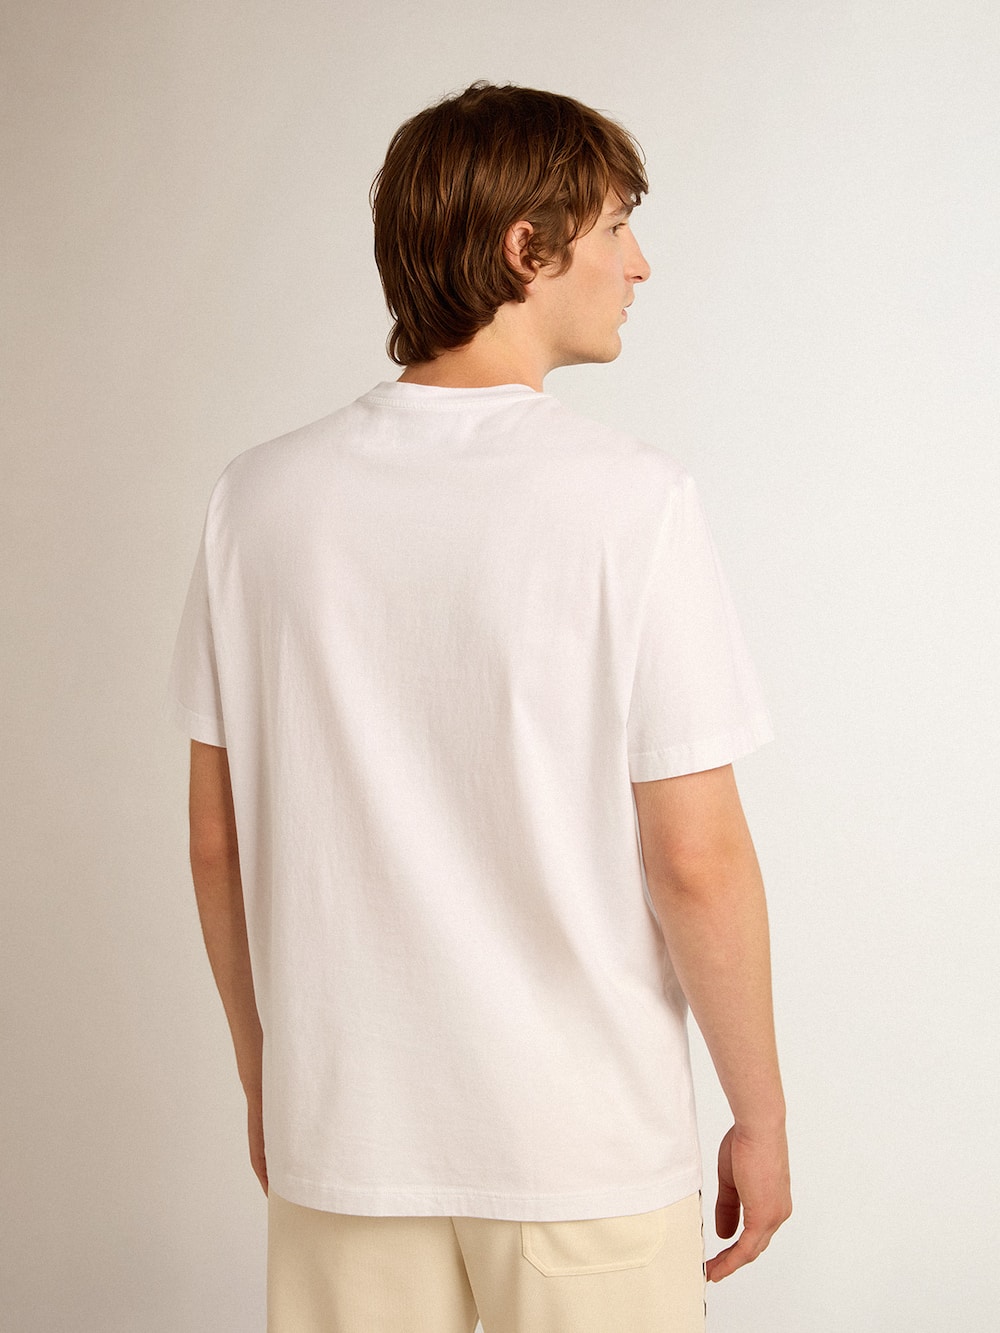 Golden Goose - Camiseta blanca de la colección Star con estrella negra en el delantero in 